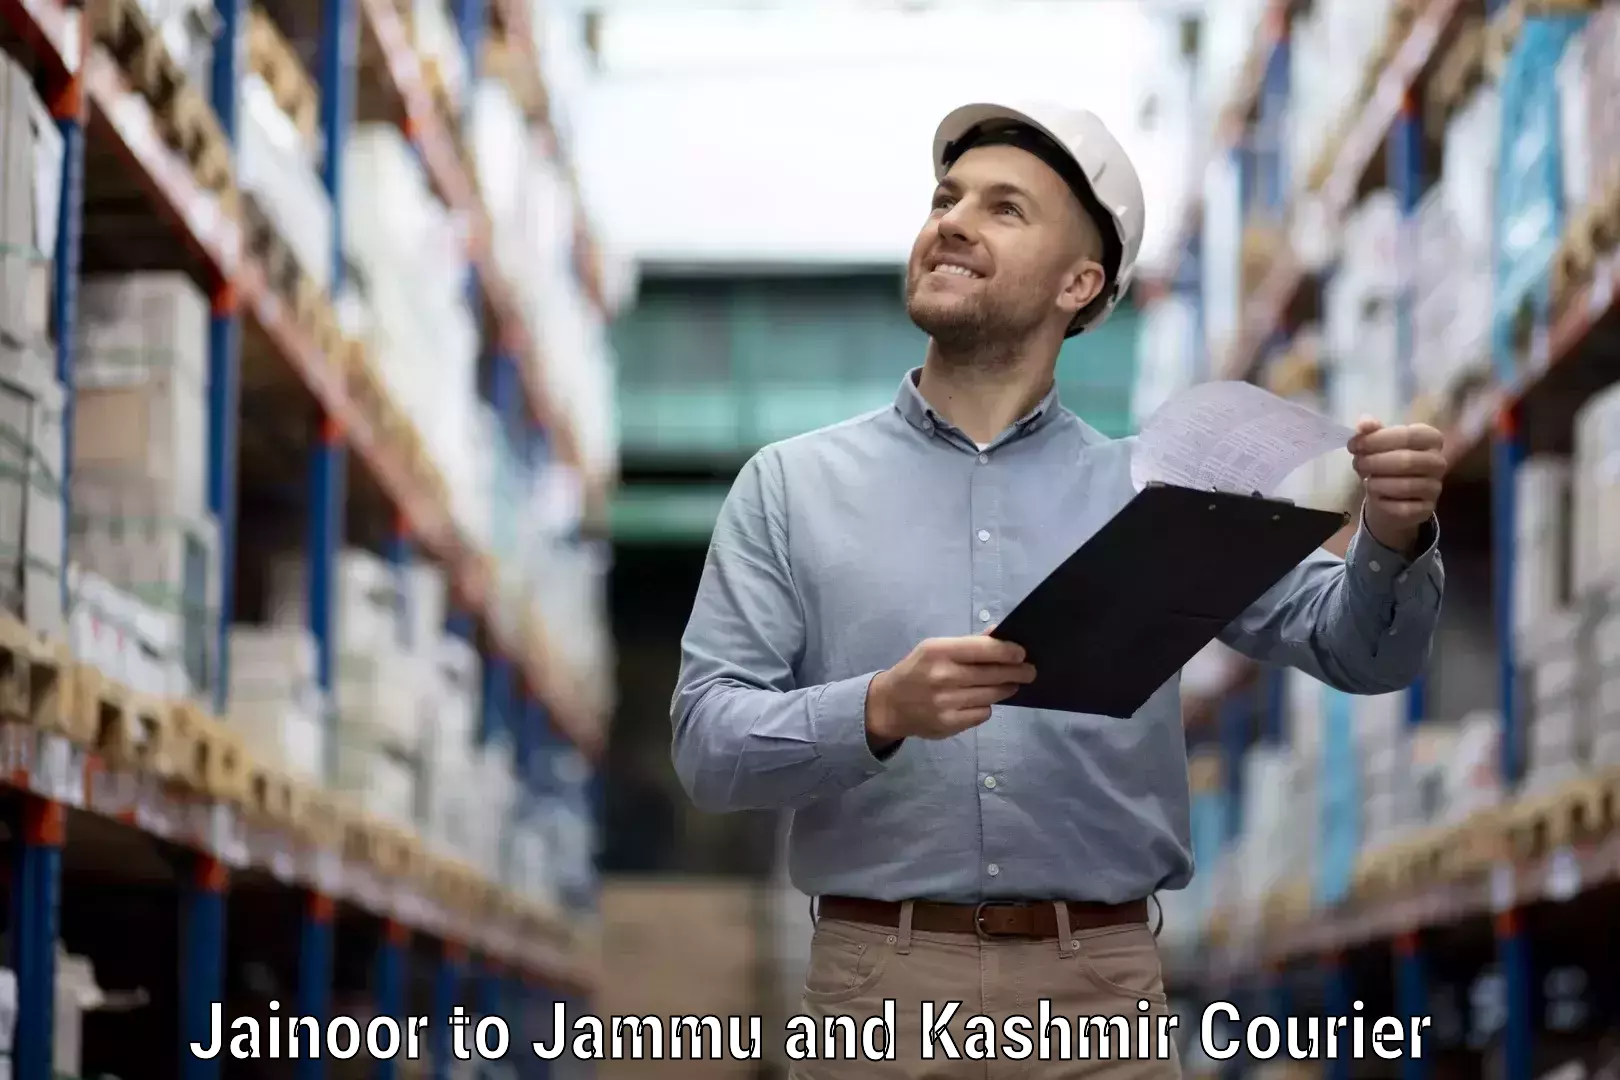 Efficient parcel service Jainoor to University of Jammu